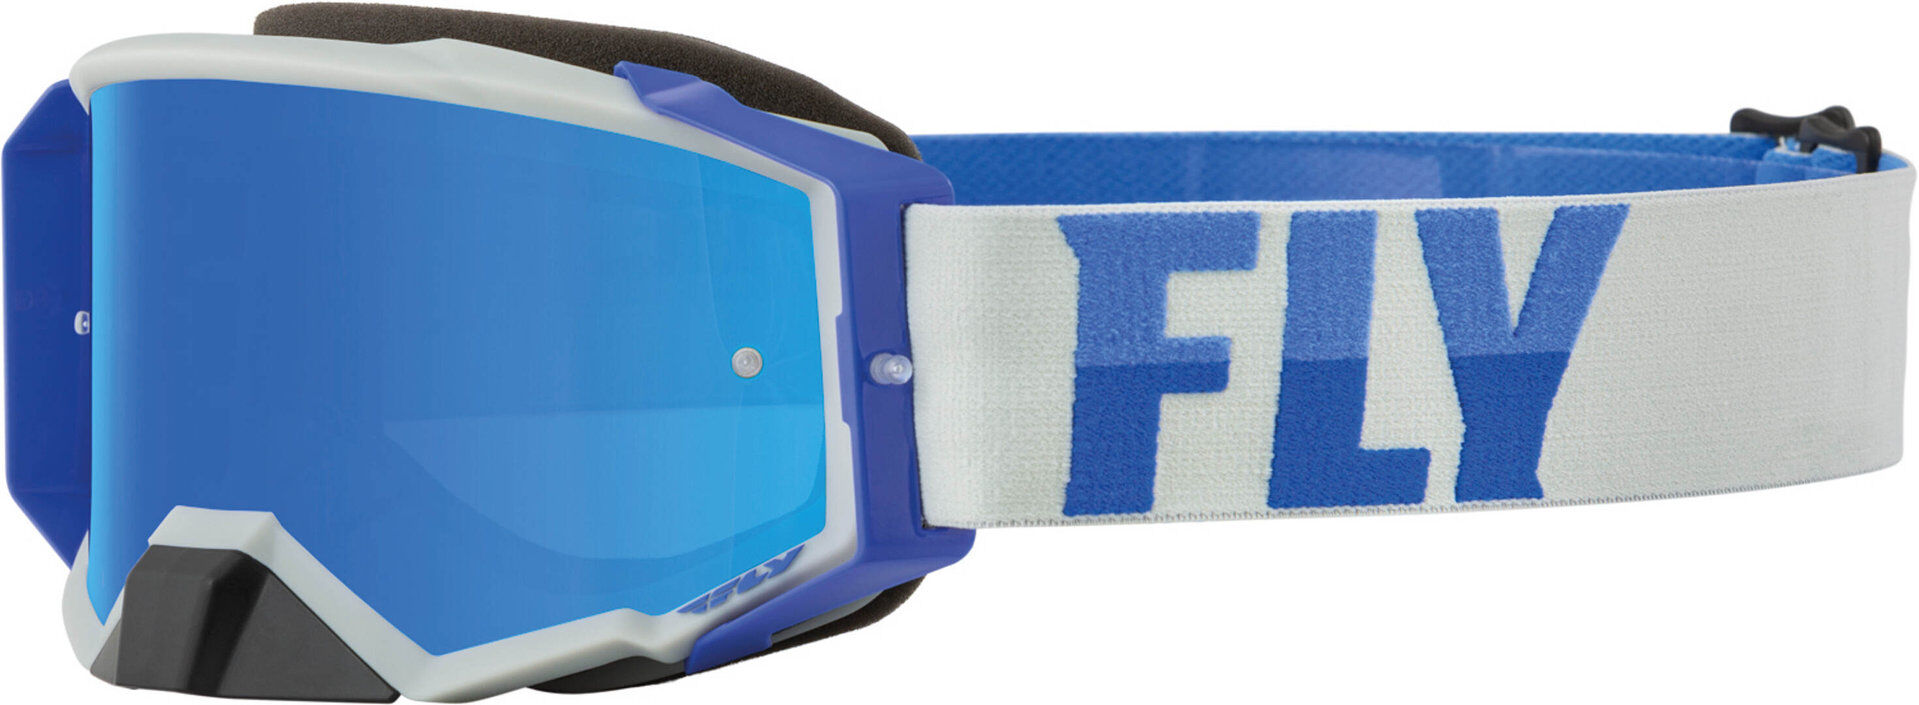 fly racing zone pro occhiali da motocross bianco blu